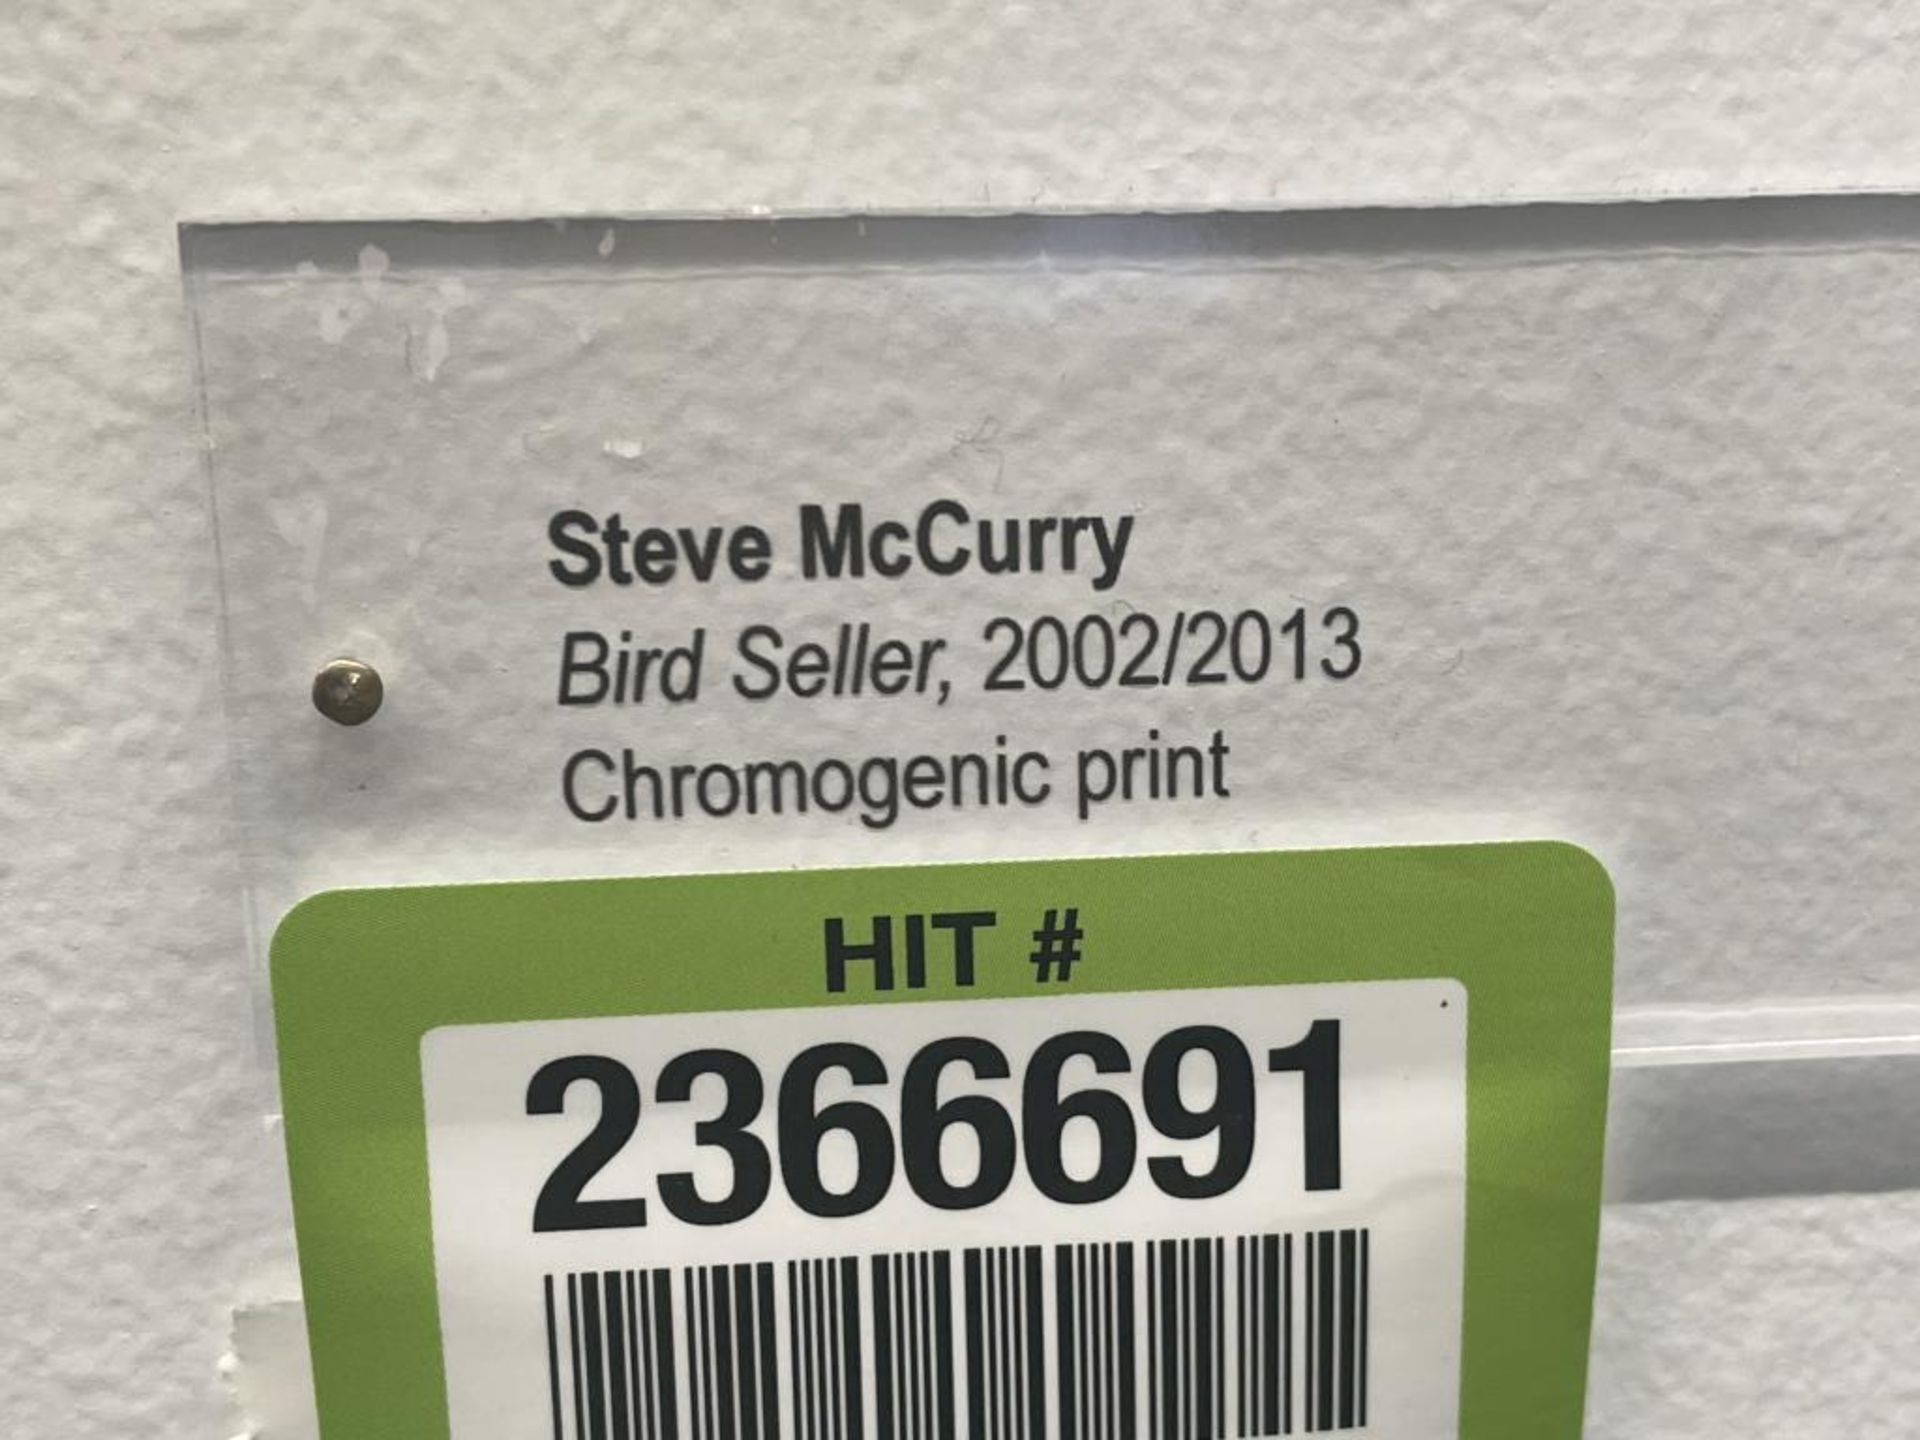 Steve McCurry "Bird Seller" Chromogenic Print - Image 3 of 8